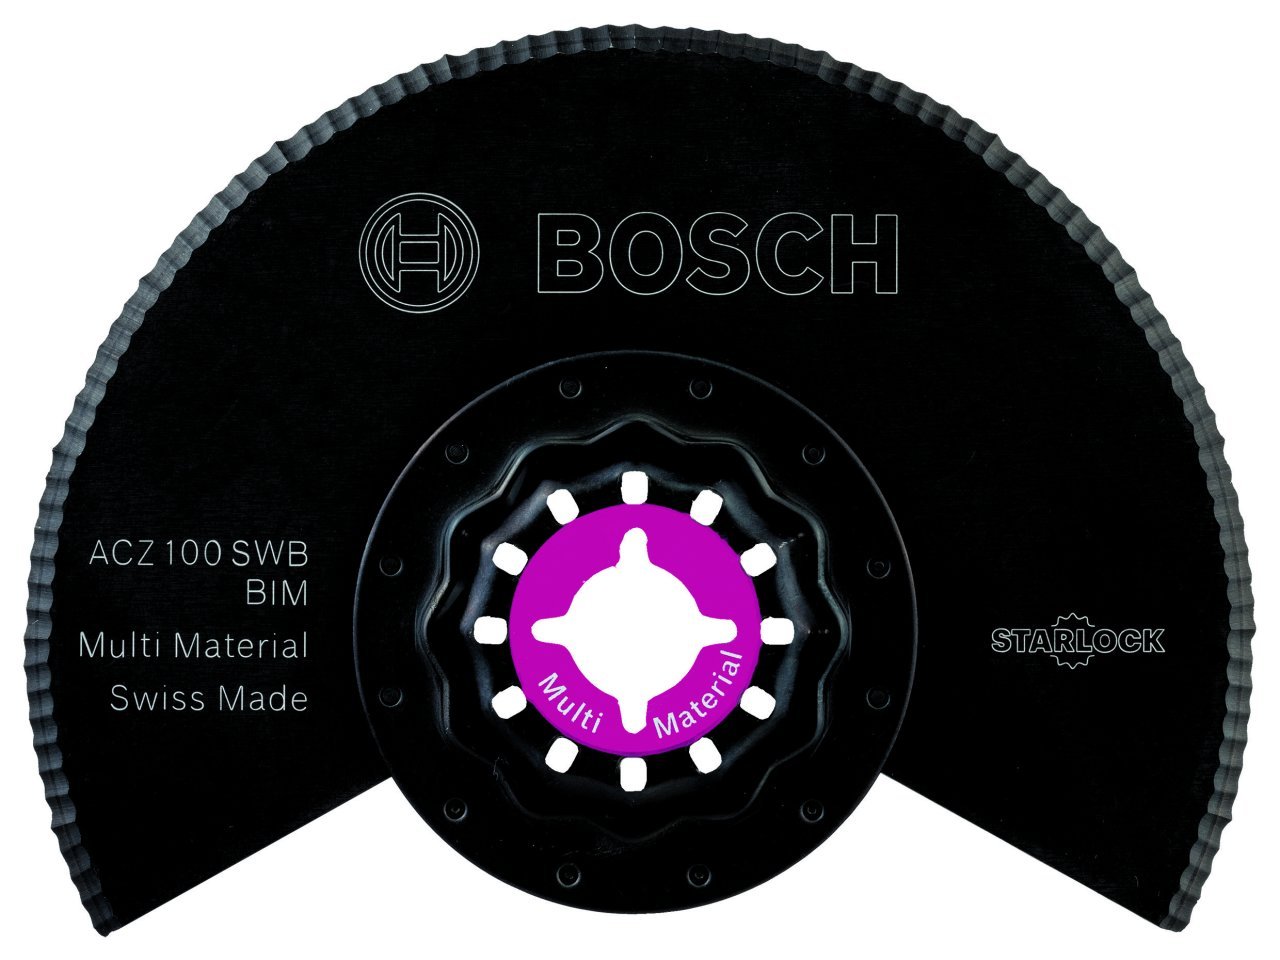 Bosch - Starlock - ACZ 100 SWB - BIM Oluklu Segman Testere Bıçağı 1'li 2608661693